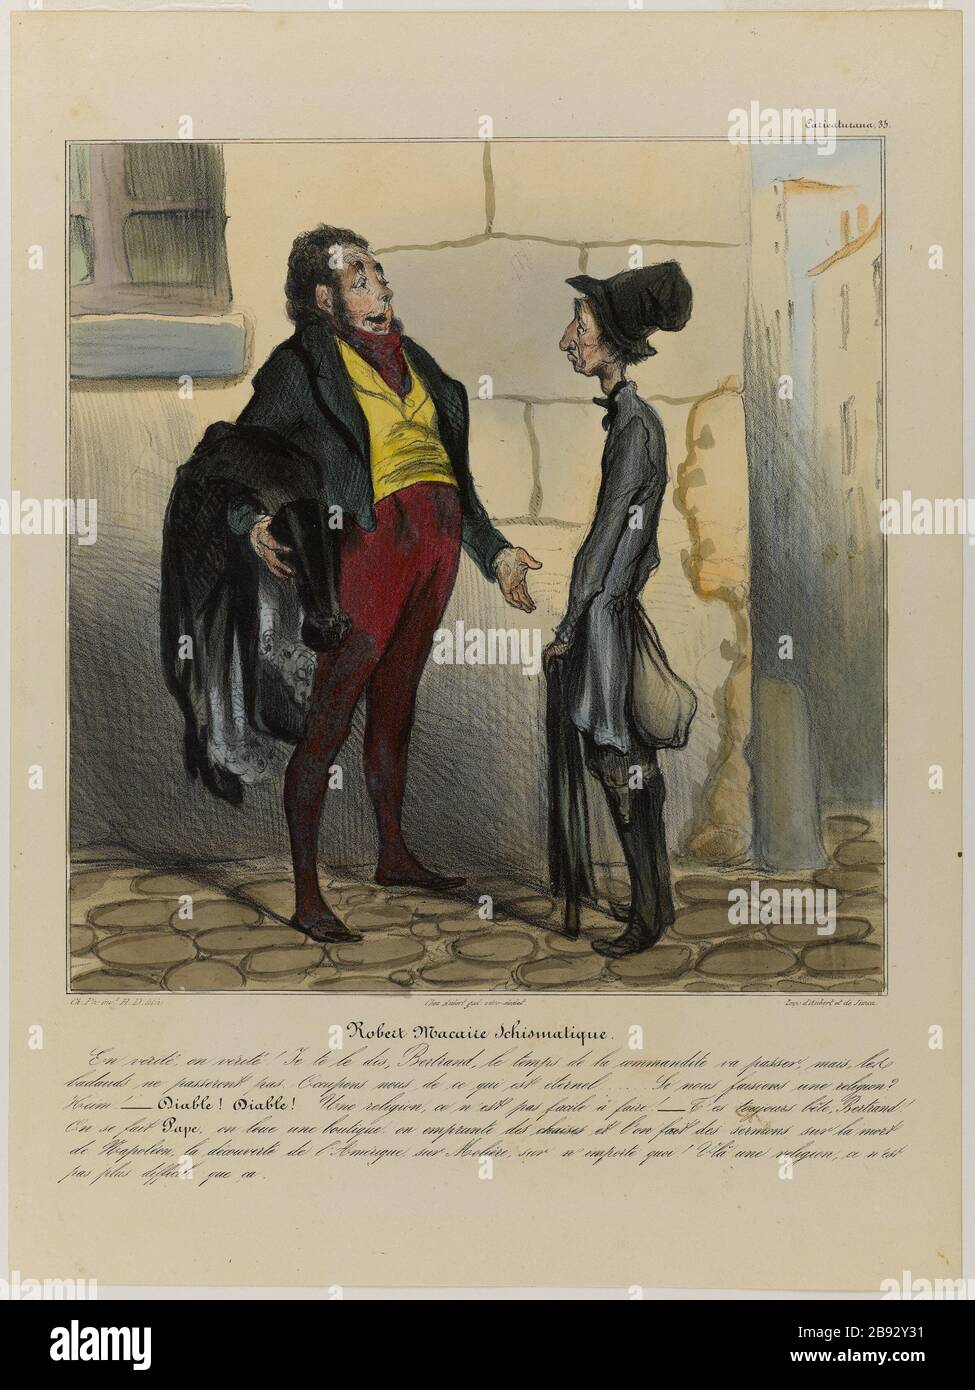 ROBERT MACAIRE schismatic Honoré Daumier (1808-1879). 'Robert Macaire schismatique'. Lithographie coloriée et gommée. 1836-1838. Paris, Maison de Balzac. Stock Photo